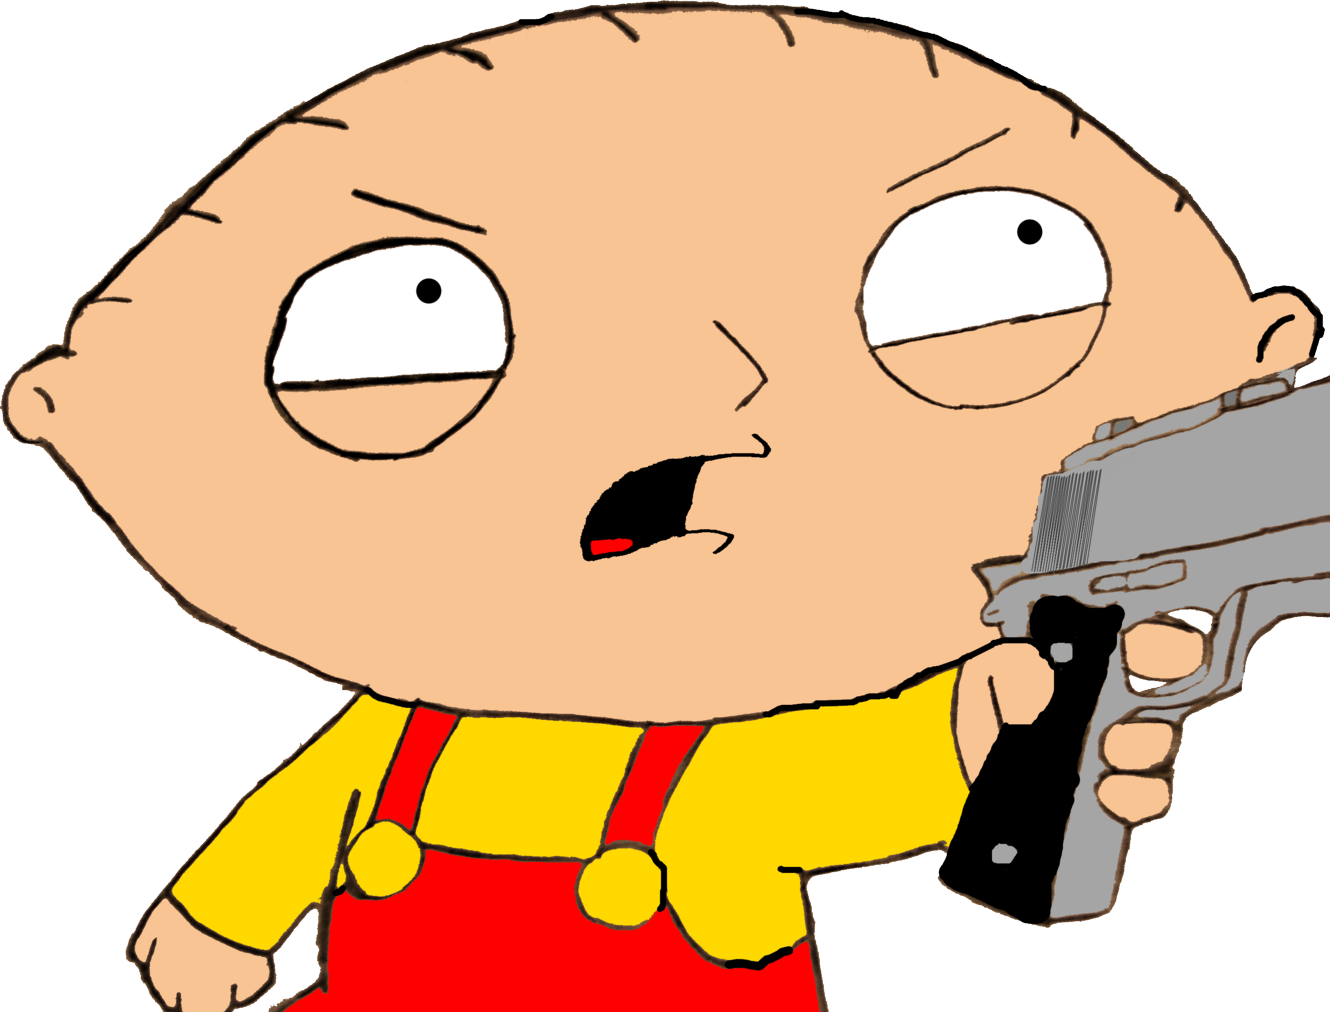 Stewie Griffin With A Gun.